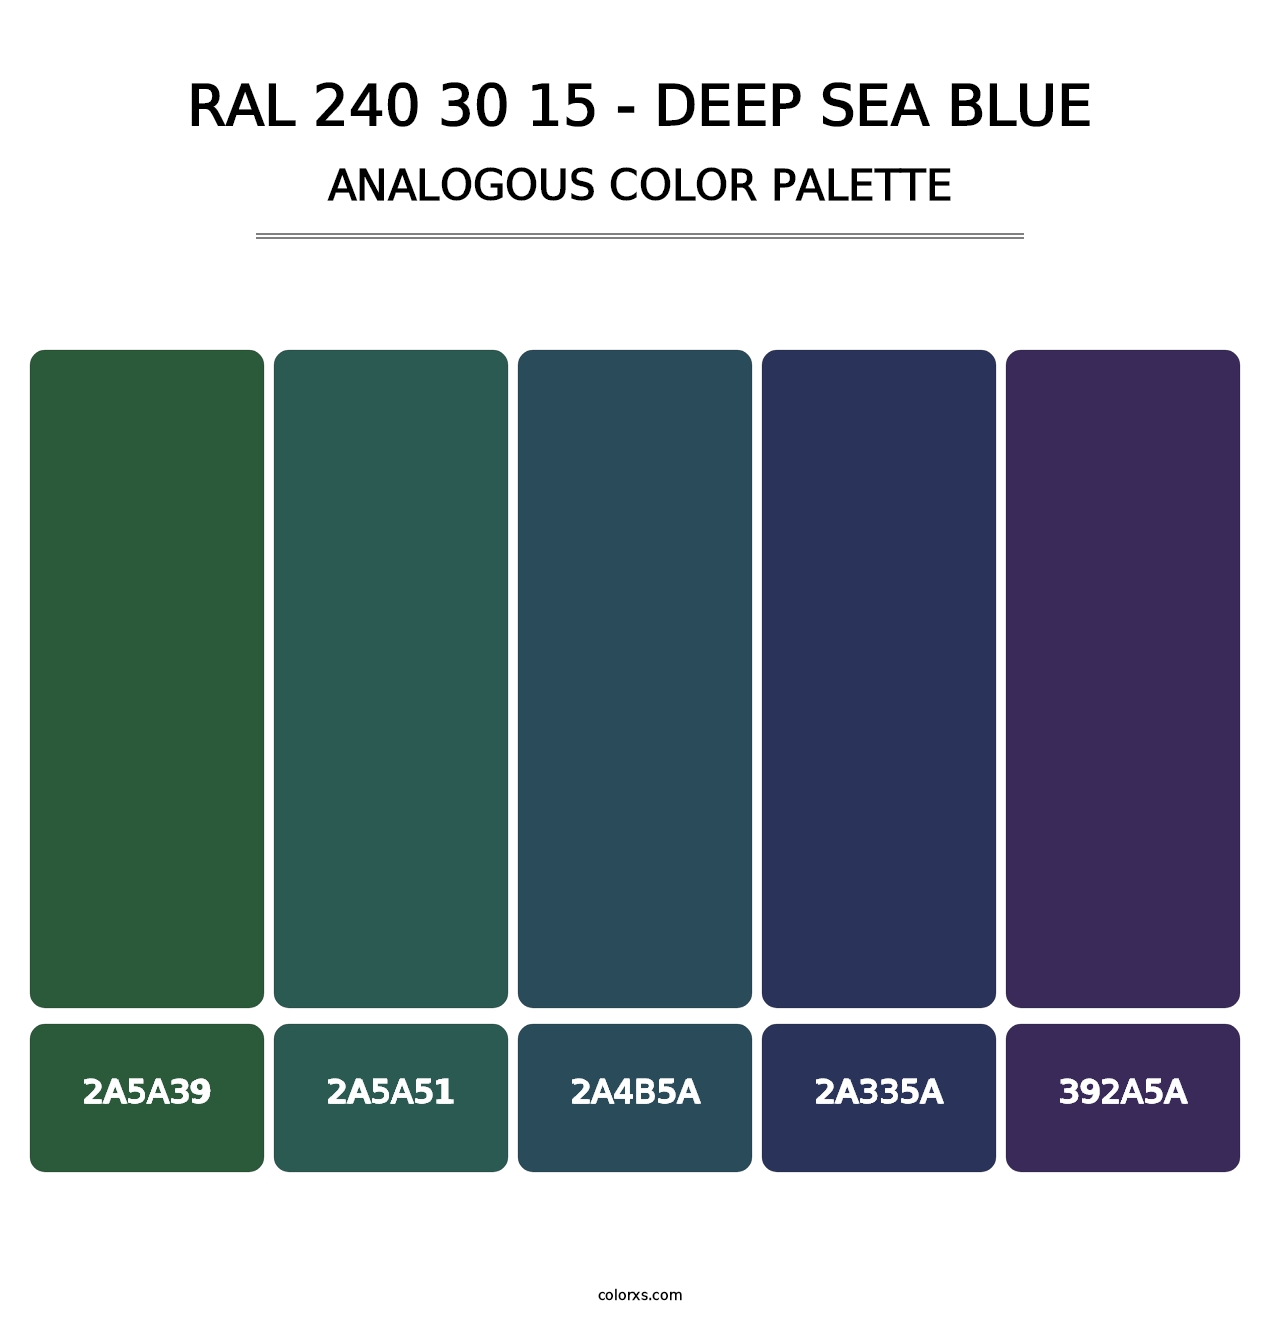 RAL 240 30 15 - Deep Sea Blue - Analogous Color Palette